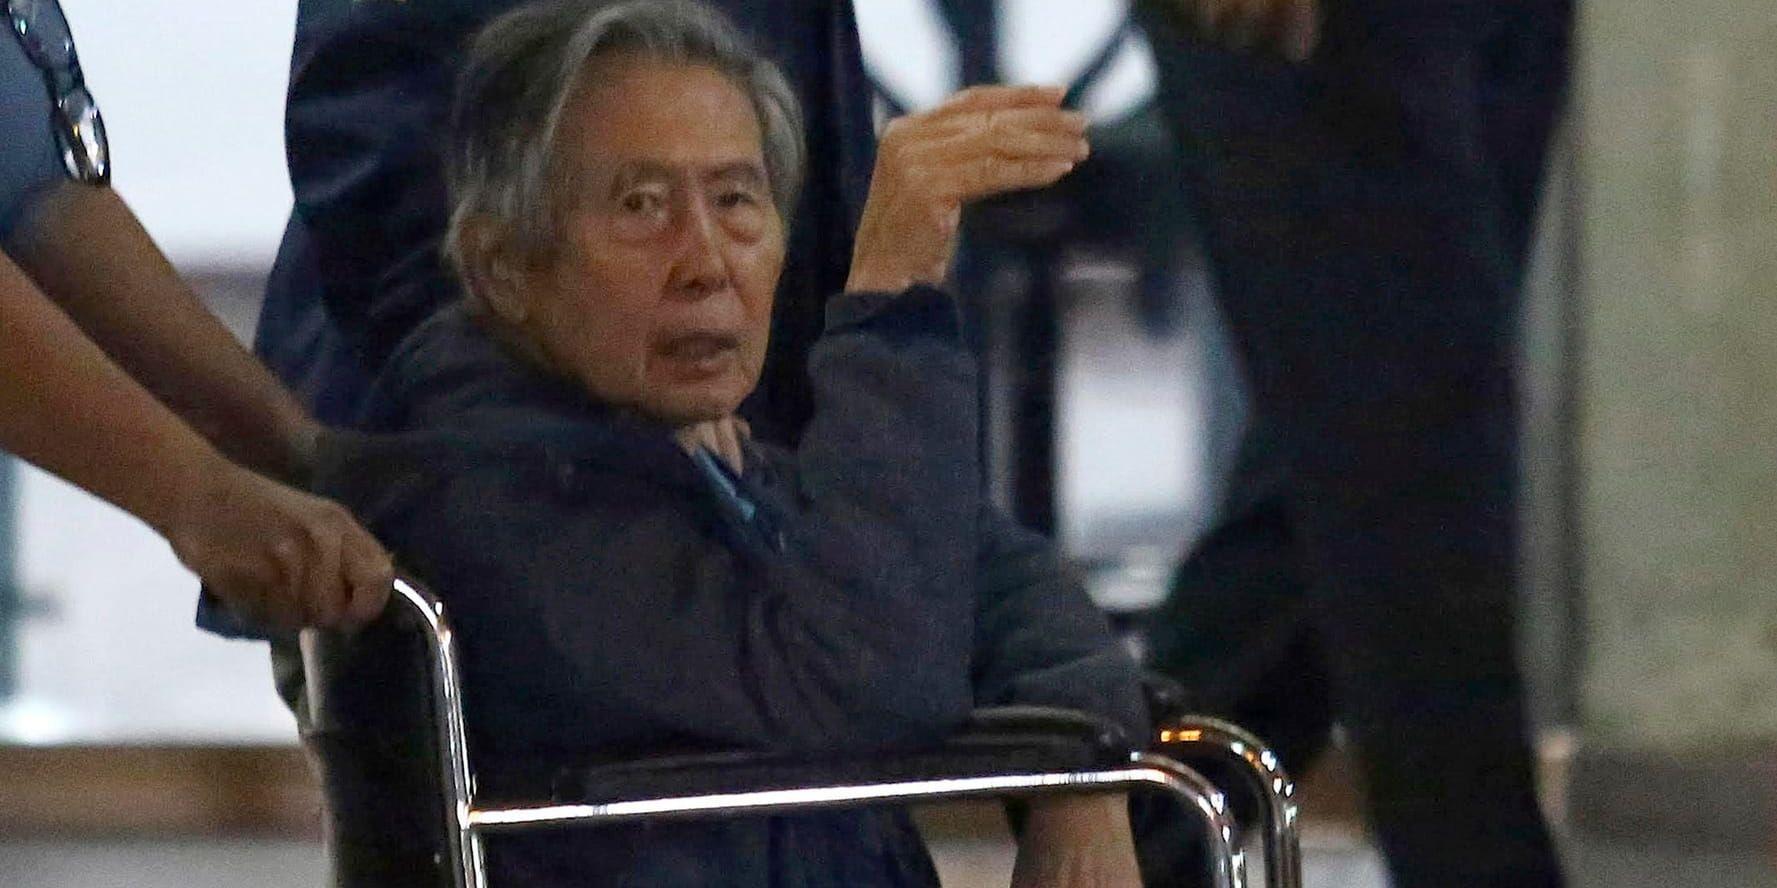 Före detta presidenten Alberto Fujimori när han sittande i en rullstol lämnar ett sjukhus i Perus huvudstad Lima i januari.